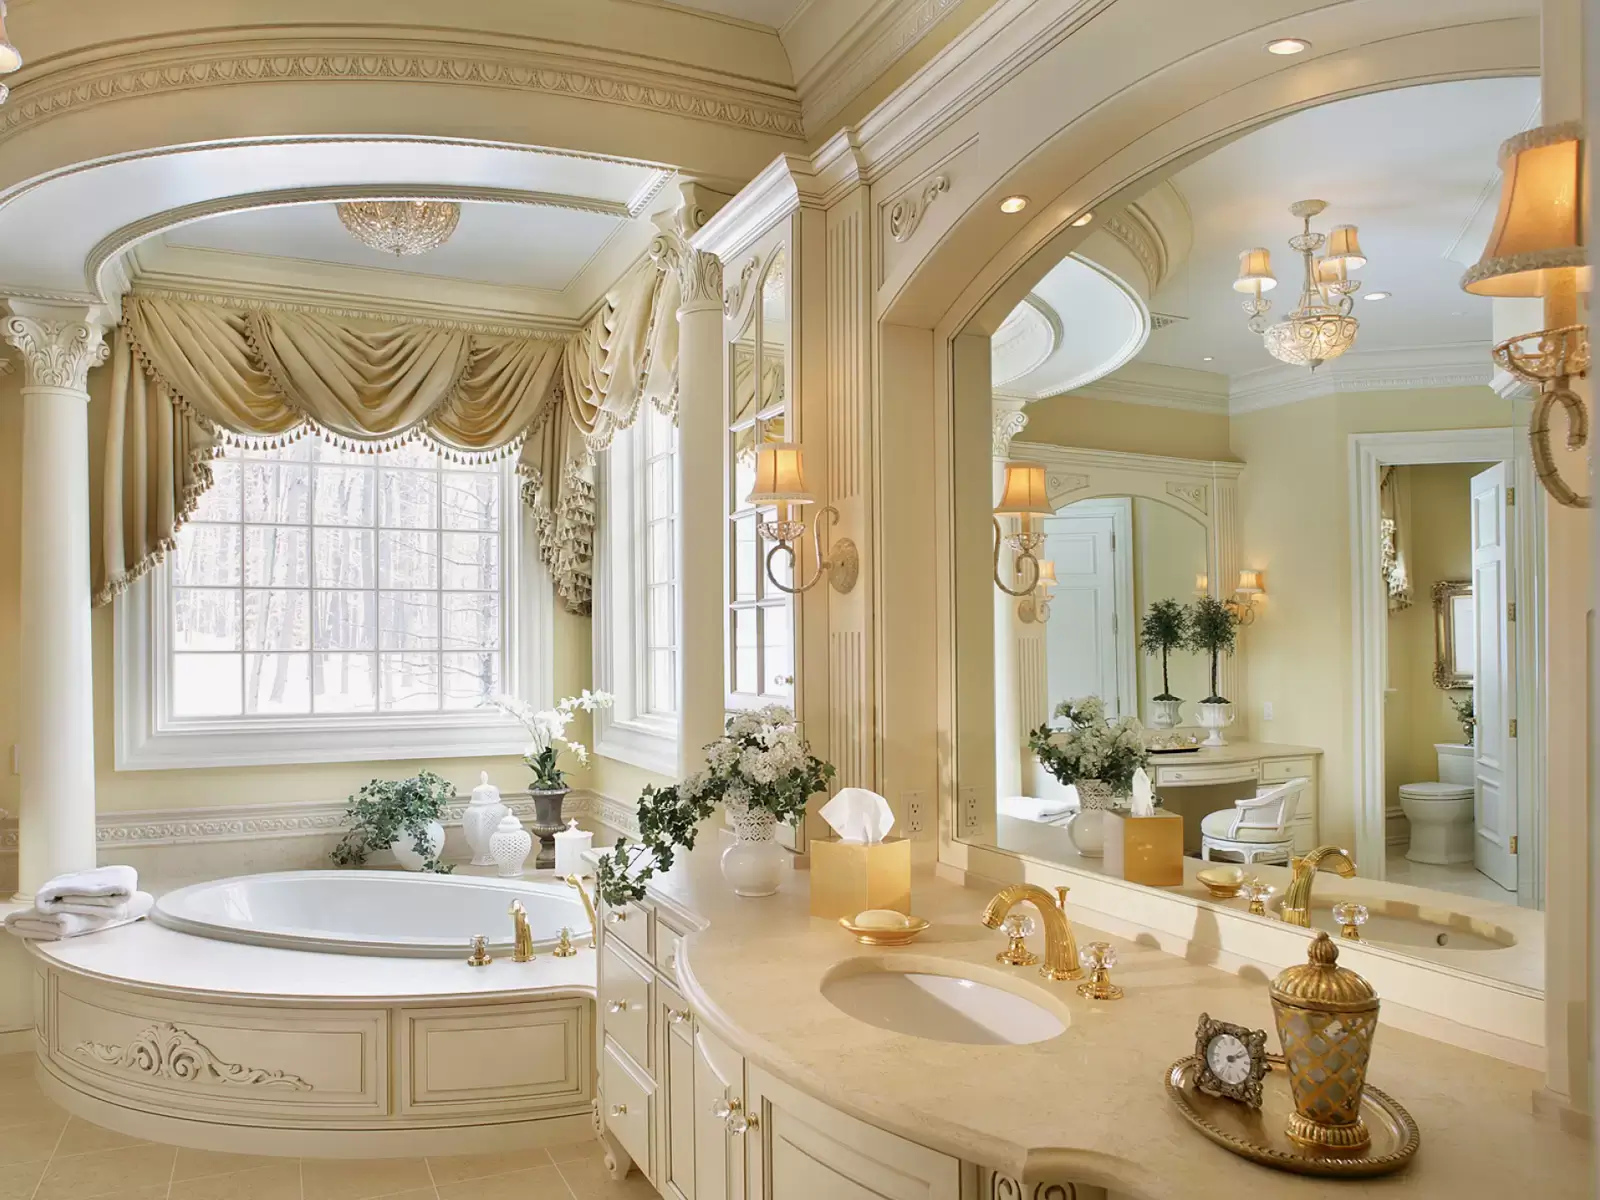 Mẫu đèn trang trí phòng tắm phong cách tân cổ điển sang trọng